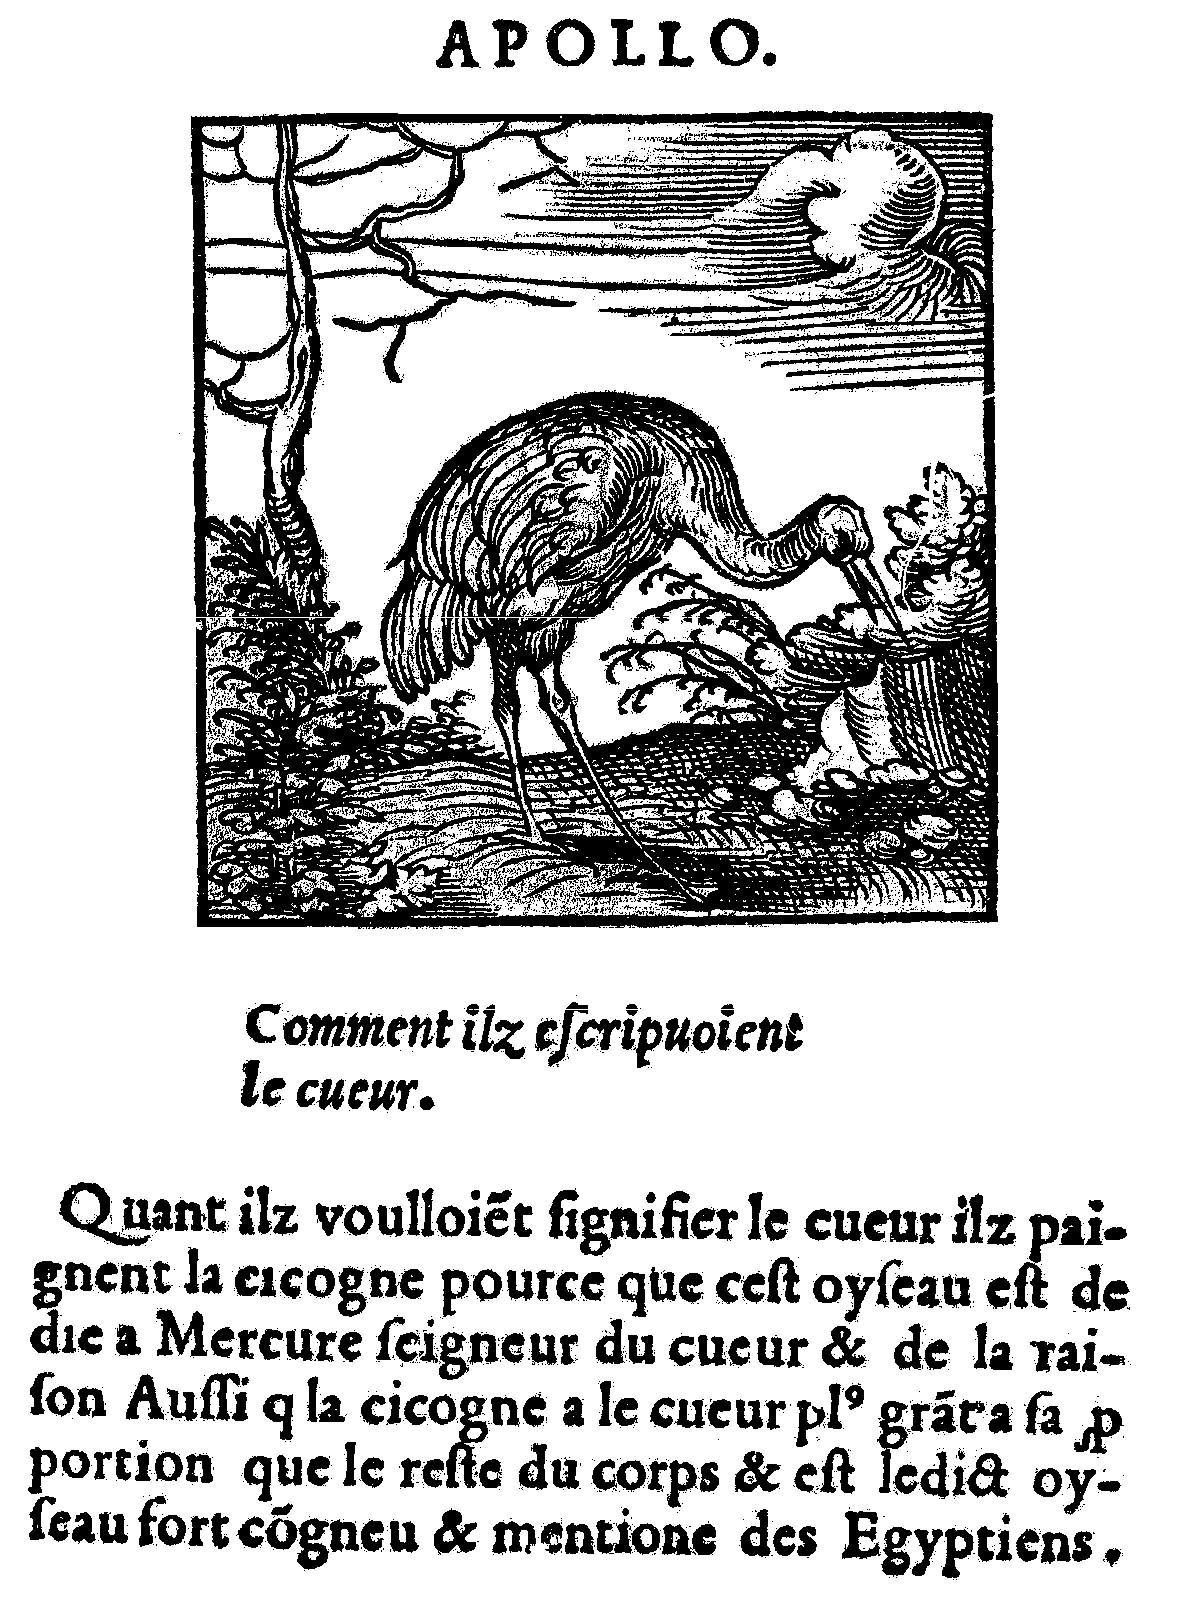 la cigogne : Mercure (daprès Horapollon), édition J.Kerver, 1543